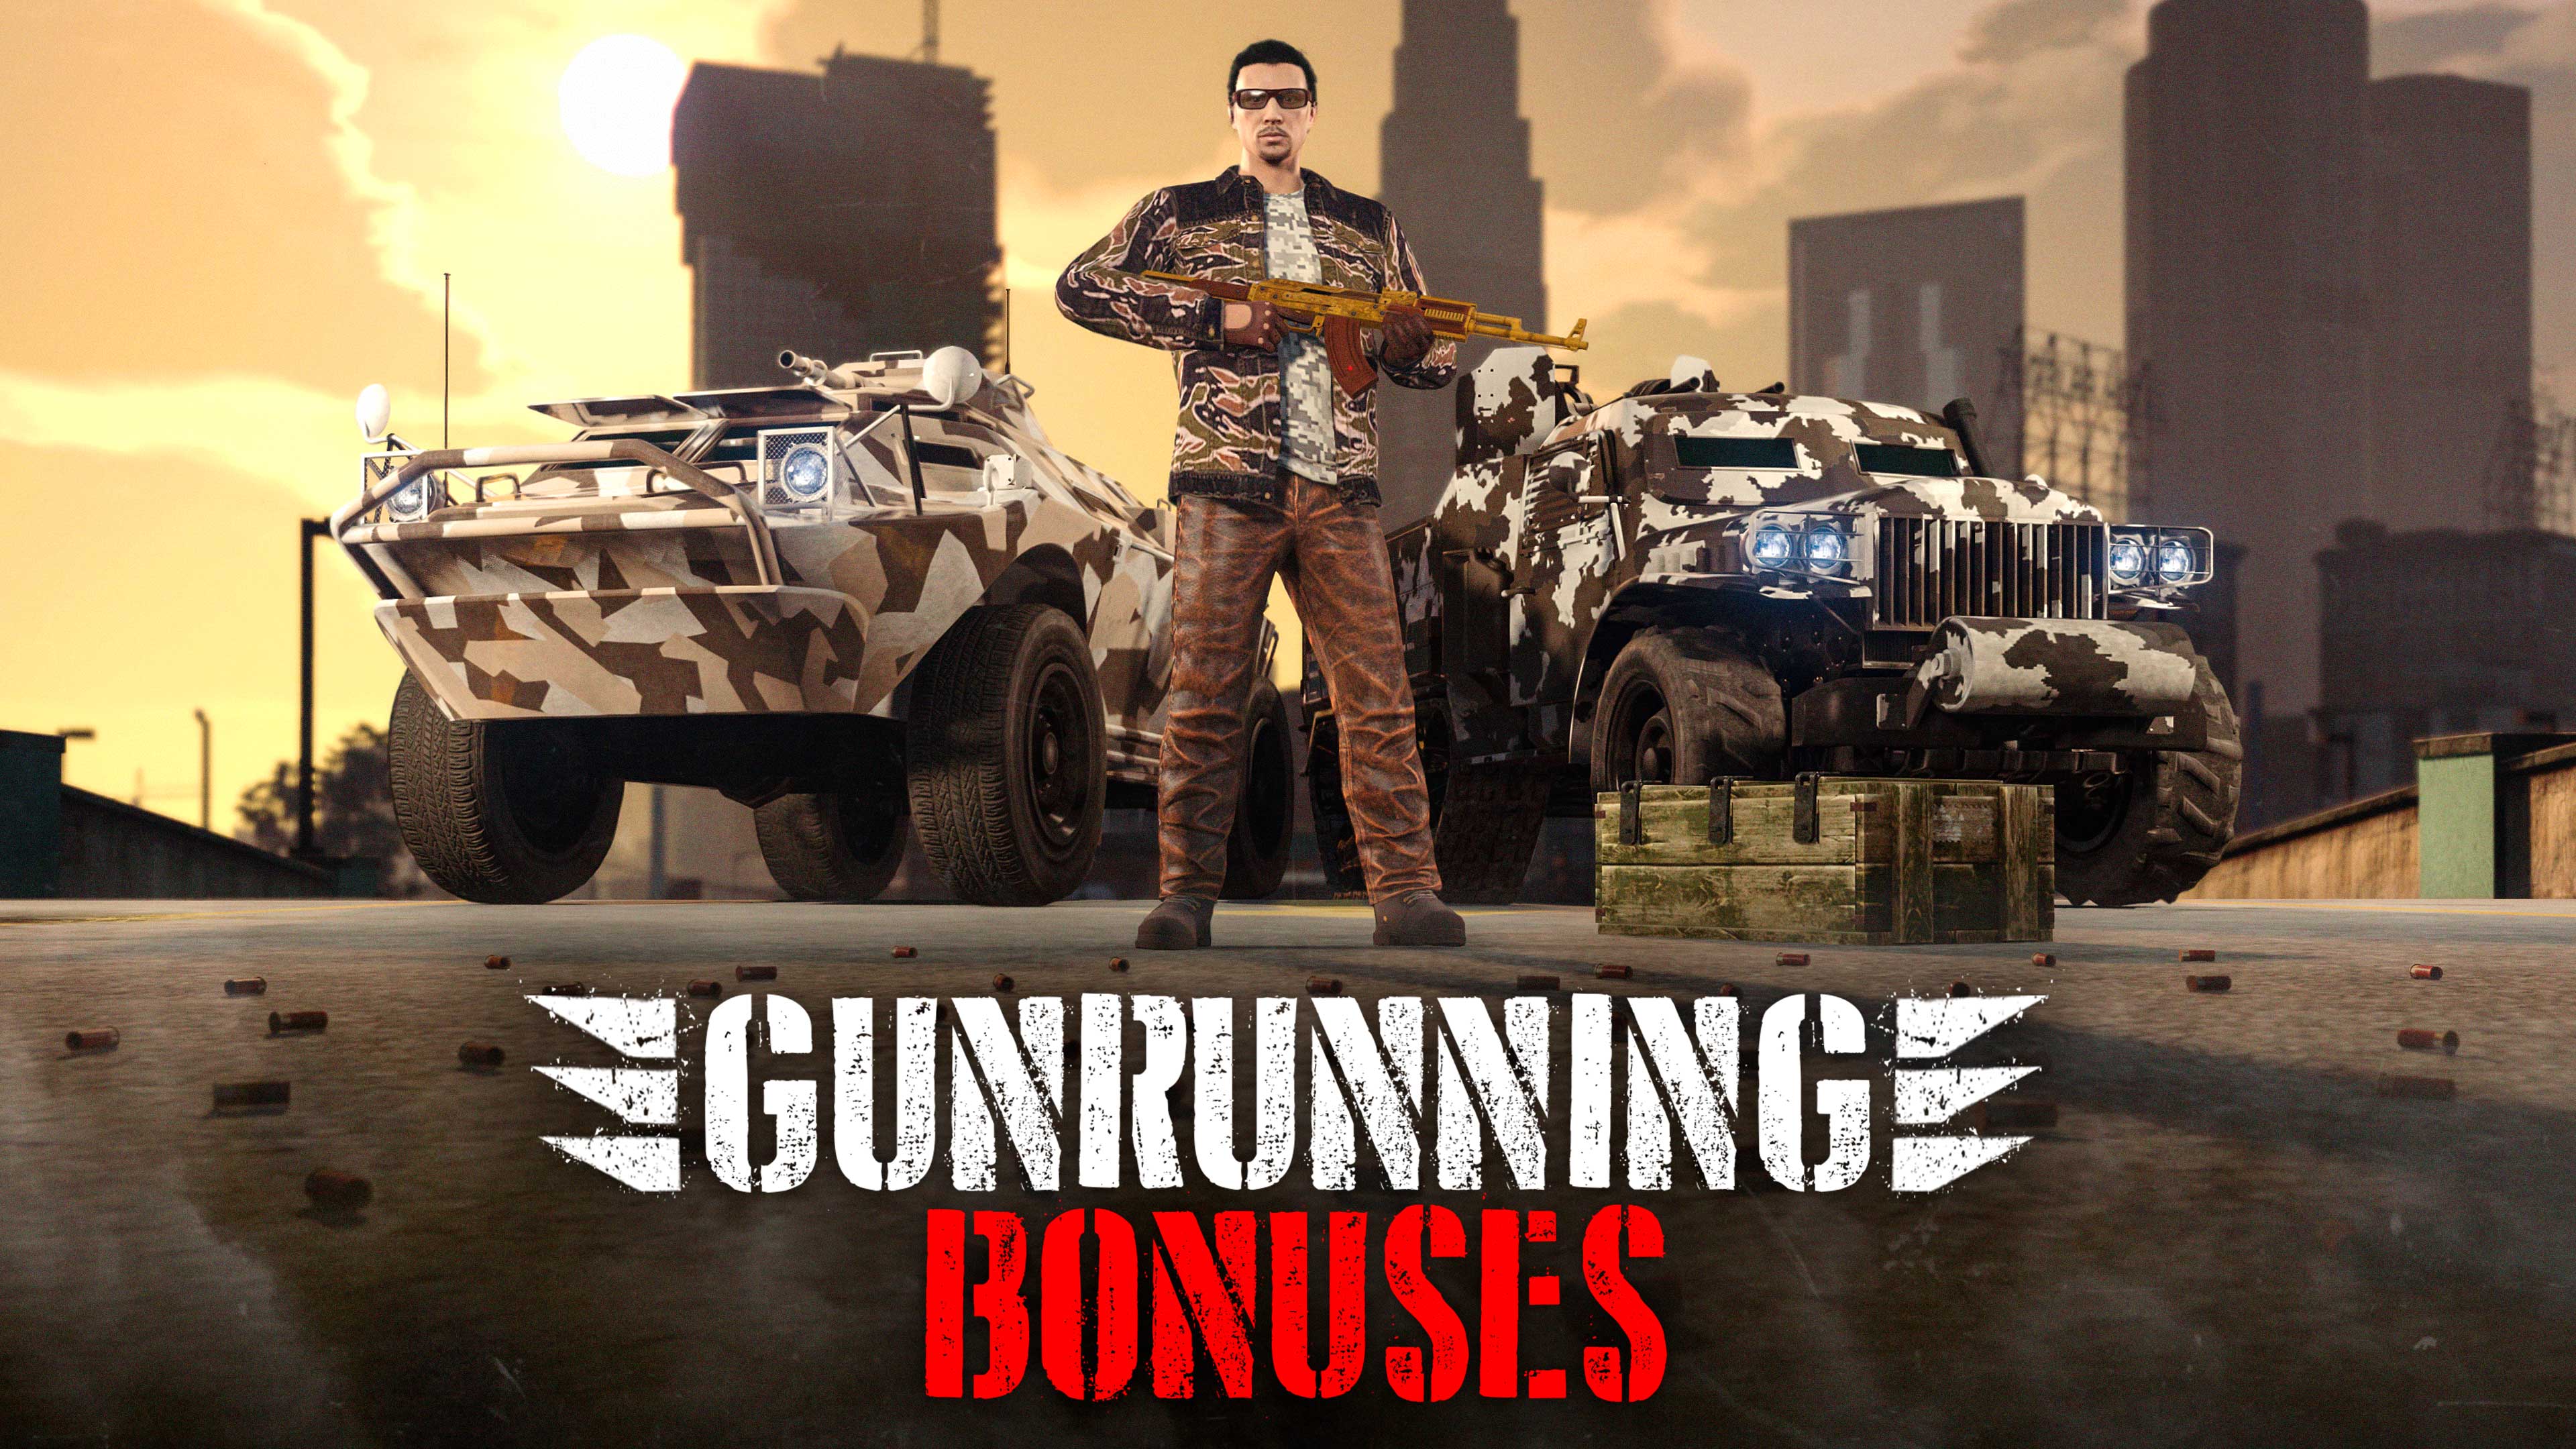 Pôster de bônus em Tráfico de Armas. Personagem de GTA Online segurando uma AK-47 dourada com dois veículos militares ao fundo.